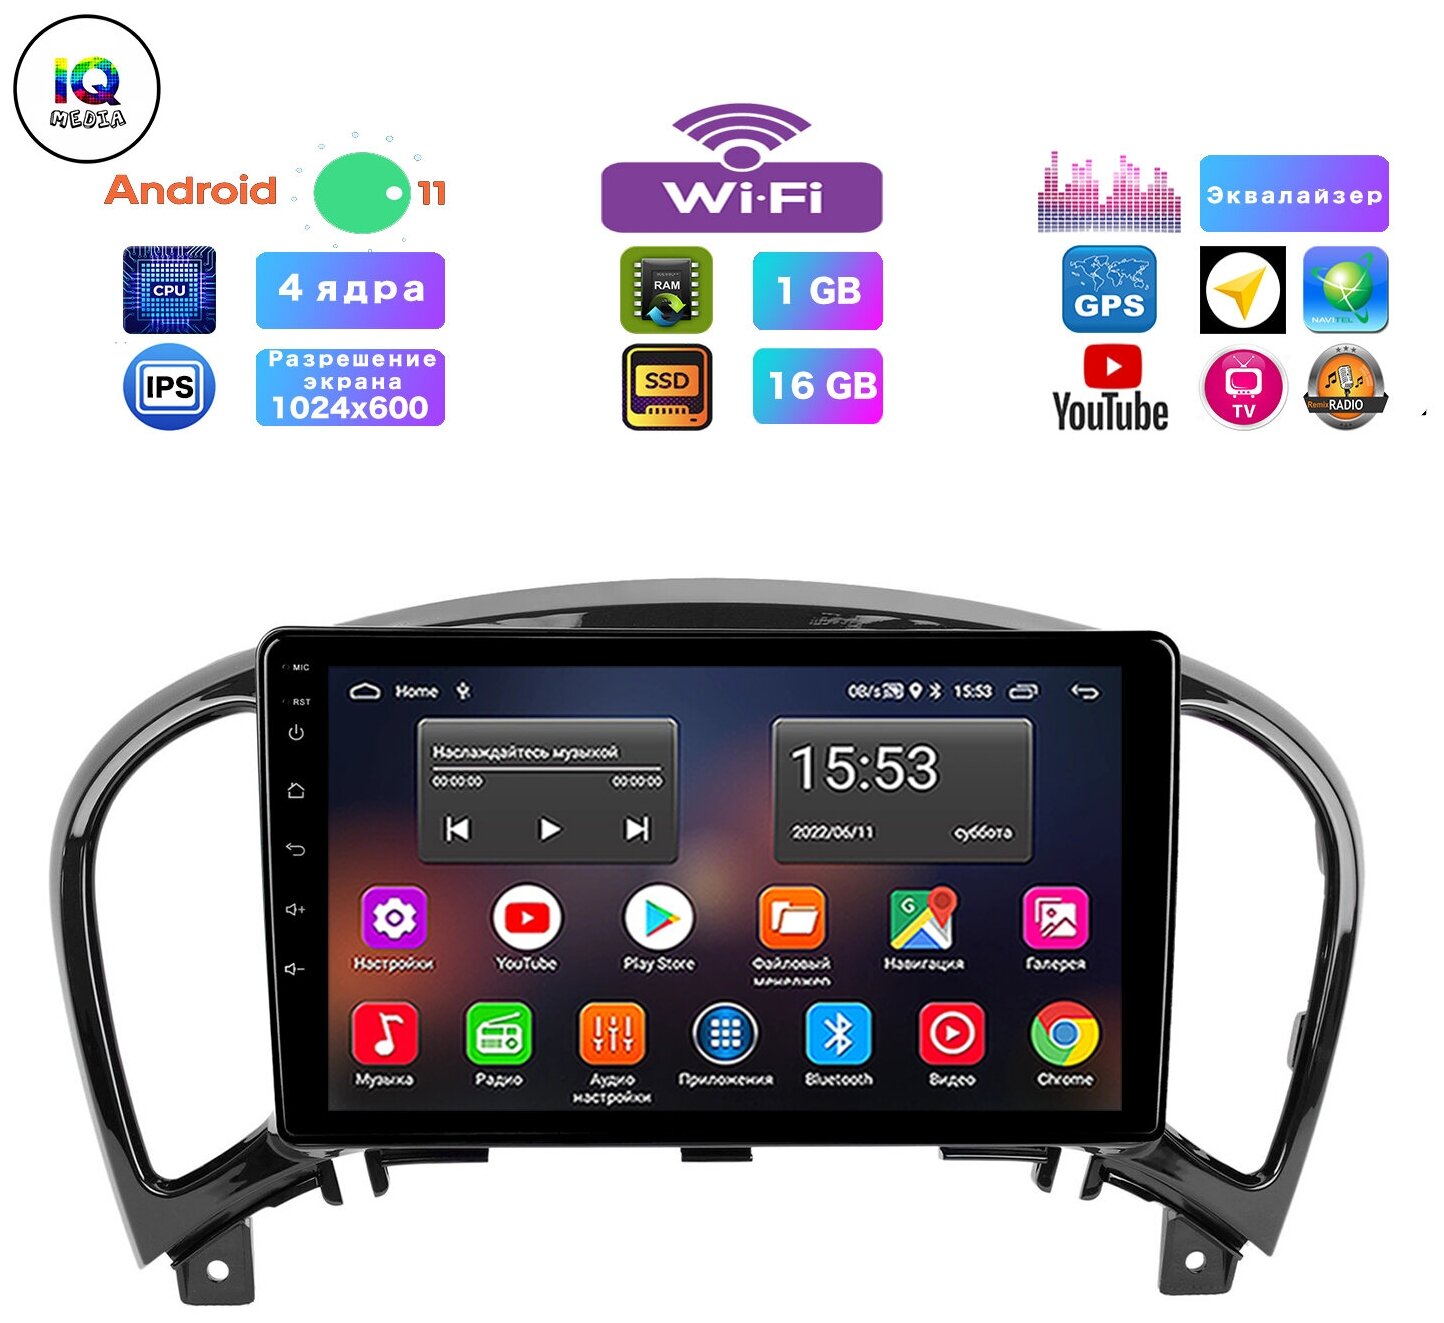 Автомагнитола для Nissan Juke (2010-2018), Android 11, 1/16 Gb, Wi-Fi, Bluetooth, Hands Free, разделение экрана, поддержка кнопок на руле